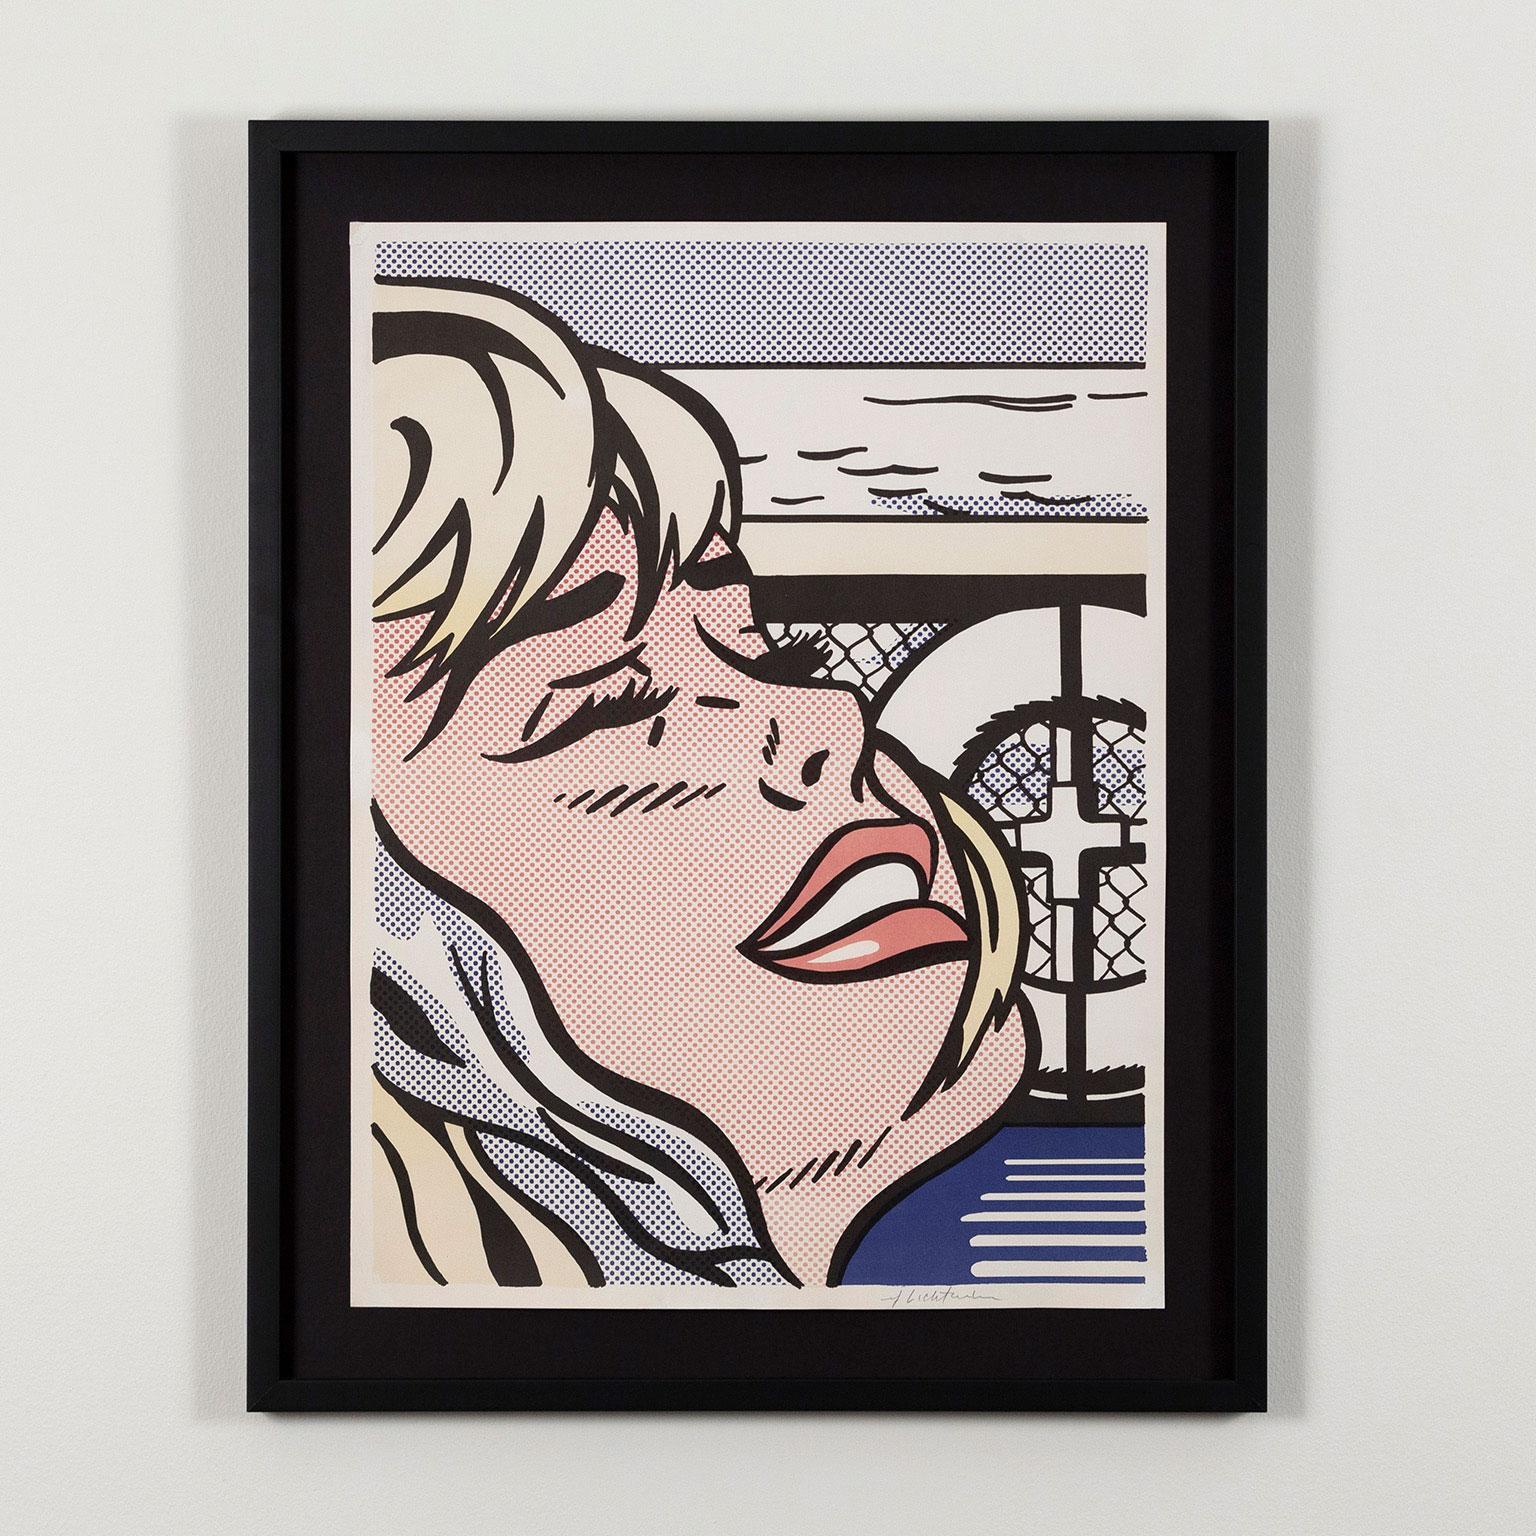 Portrait Photograph Roy Lichtenstein - La fille du bord